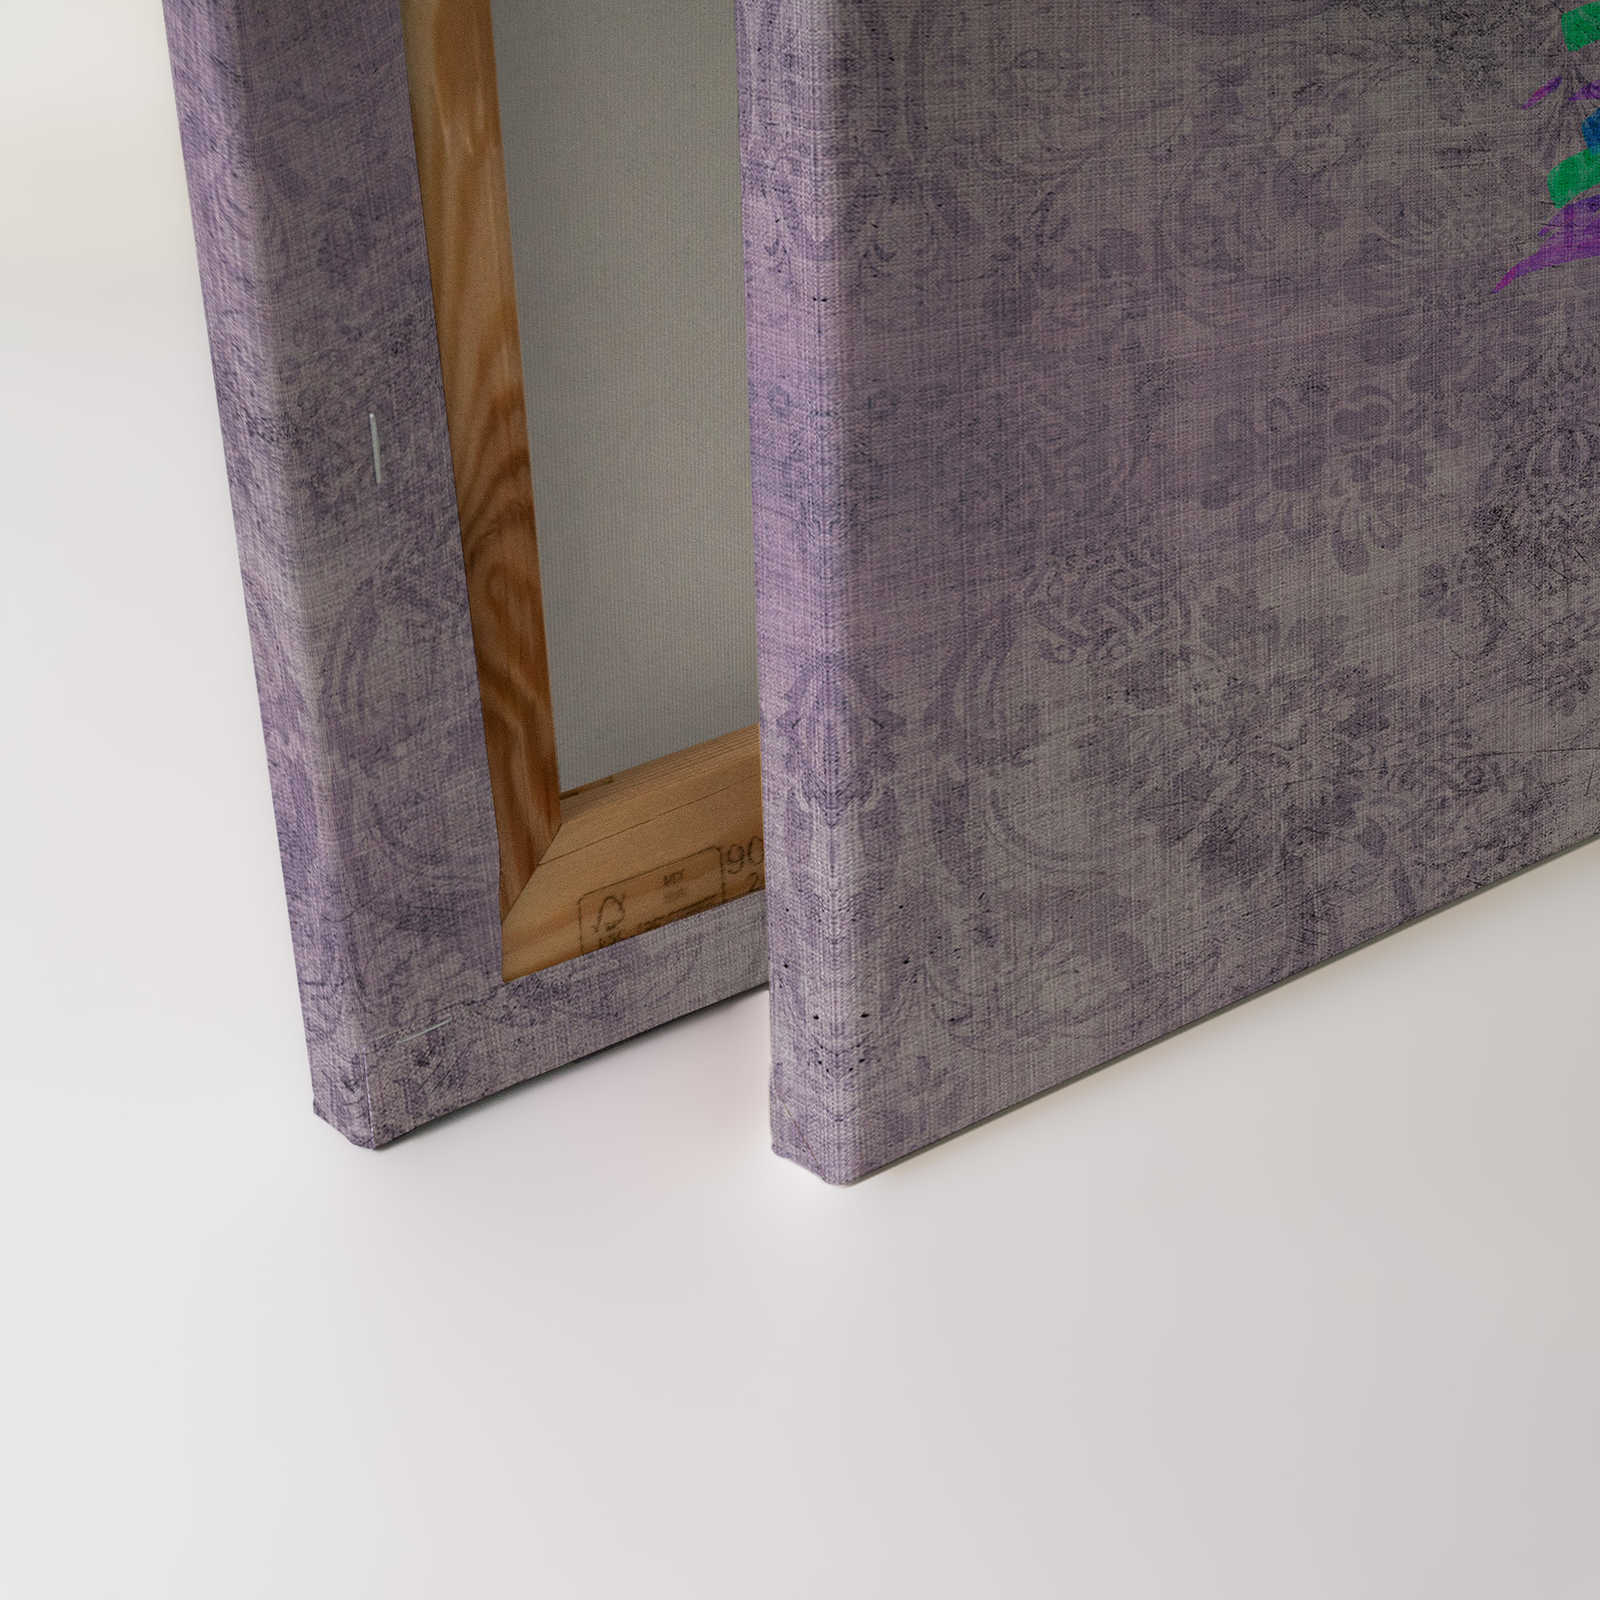             Pavo real 3 - Cuadro en lienzo con pavo real de colores - estructura de lino natural - 0,90 m x 0,60 m
        